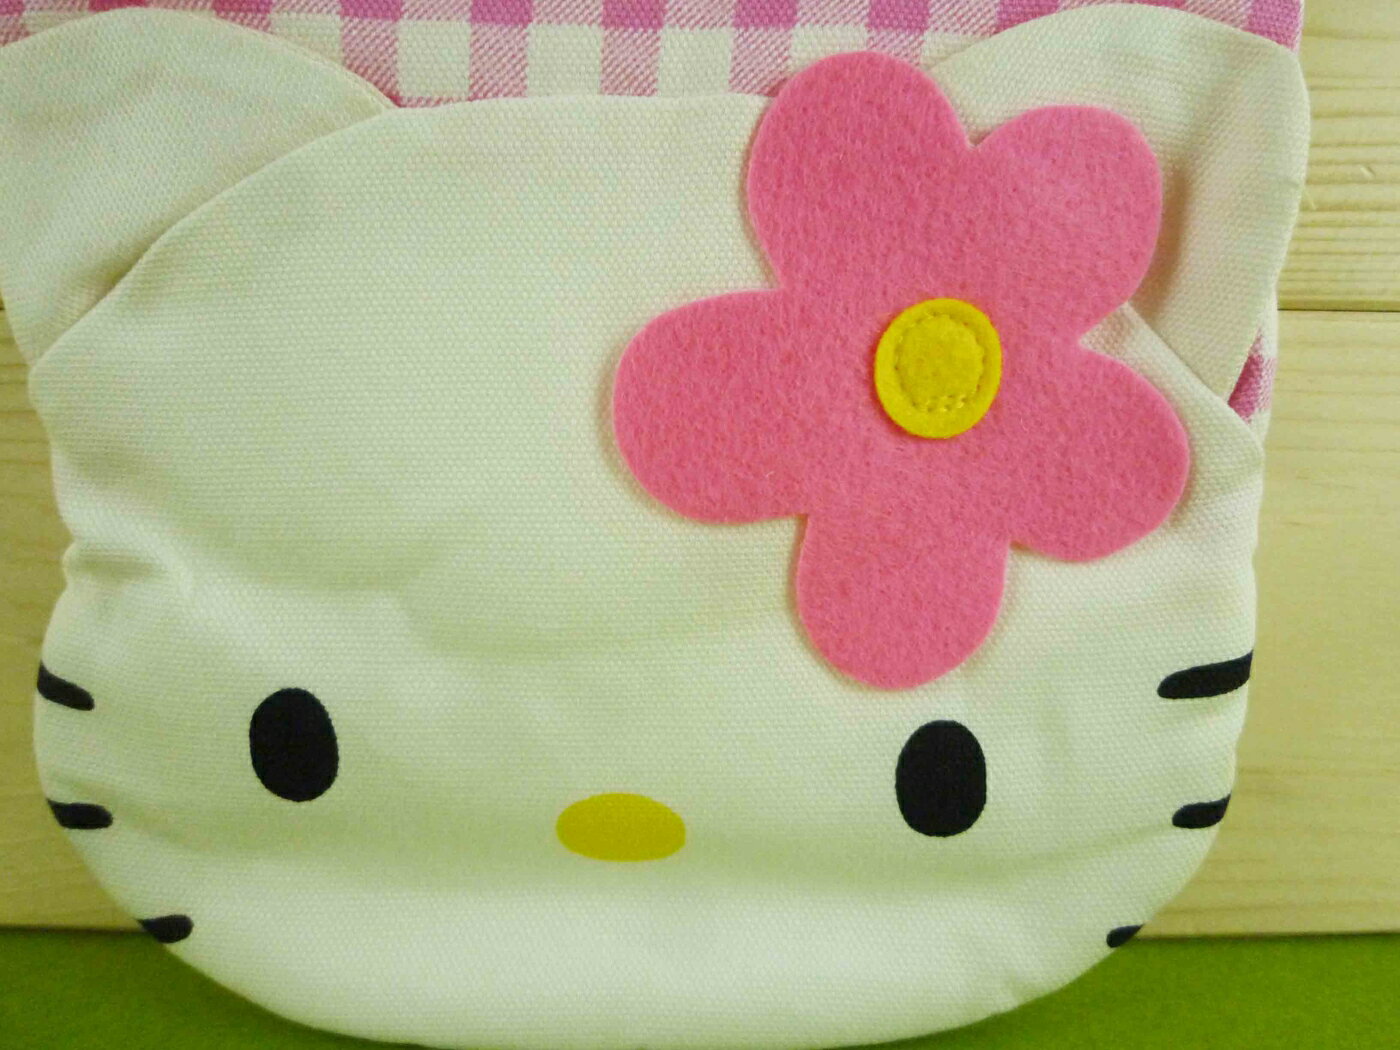 【震撼精品百貨】Hello Kitty 凱蒂貓 隔熱手套-【共1款】 震撼日式精品百貨